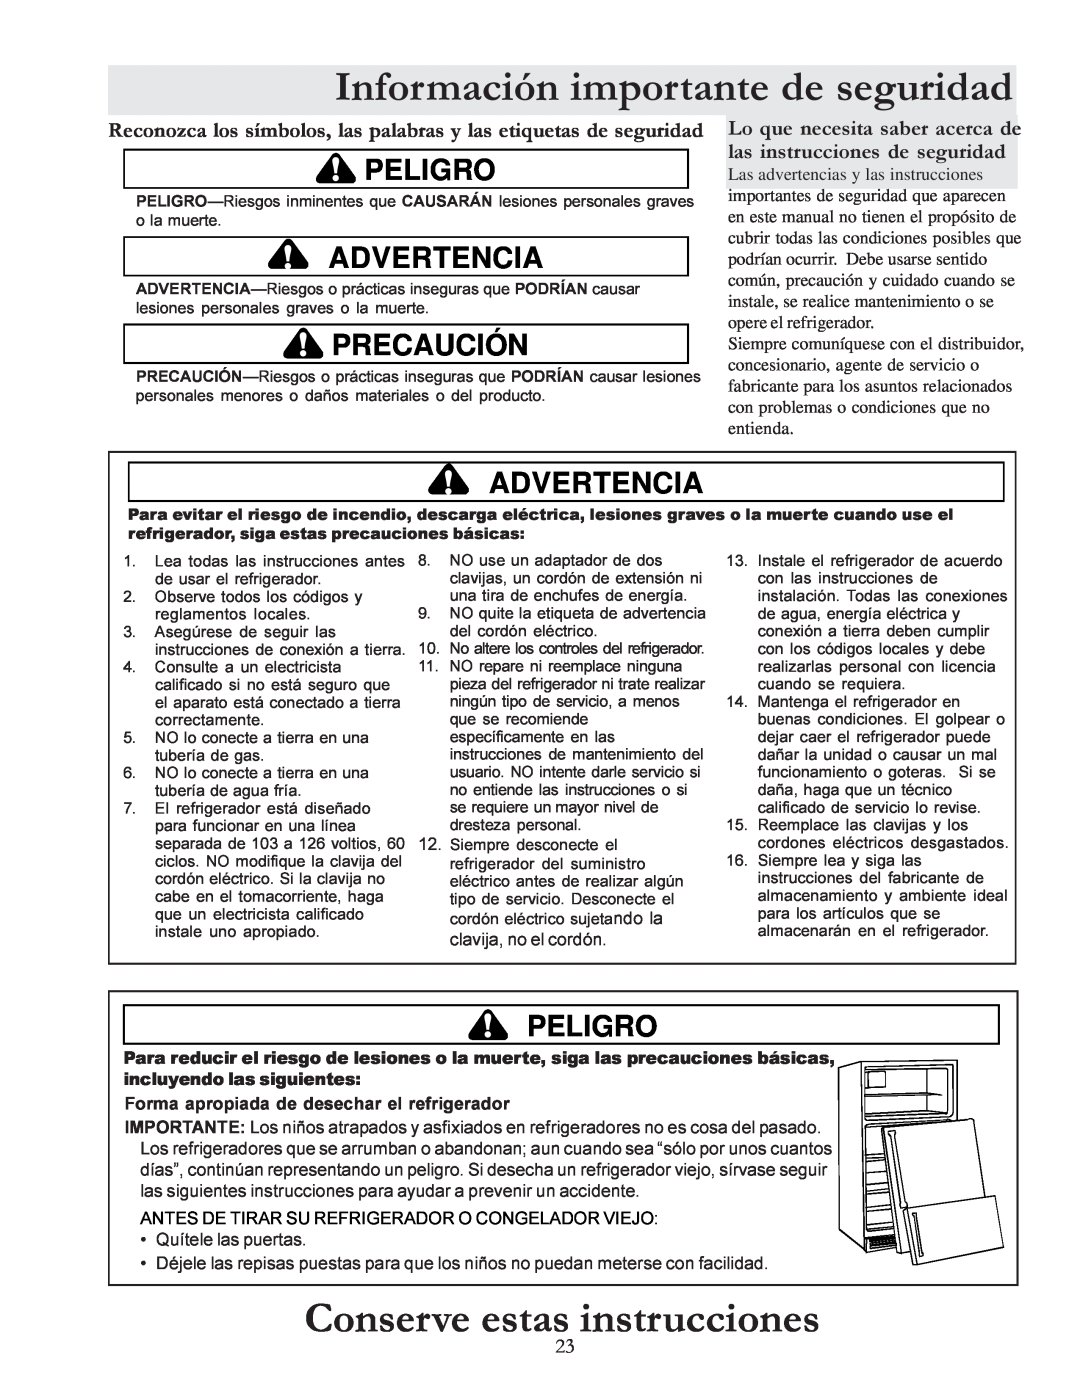 Amana W10175445A Conserve estas instrucciones, Información importante de seguridad, Peligro, Advertencia, Precaución 